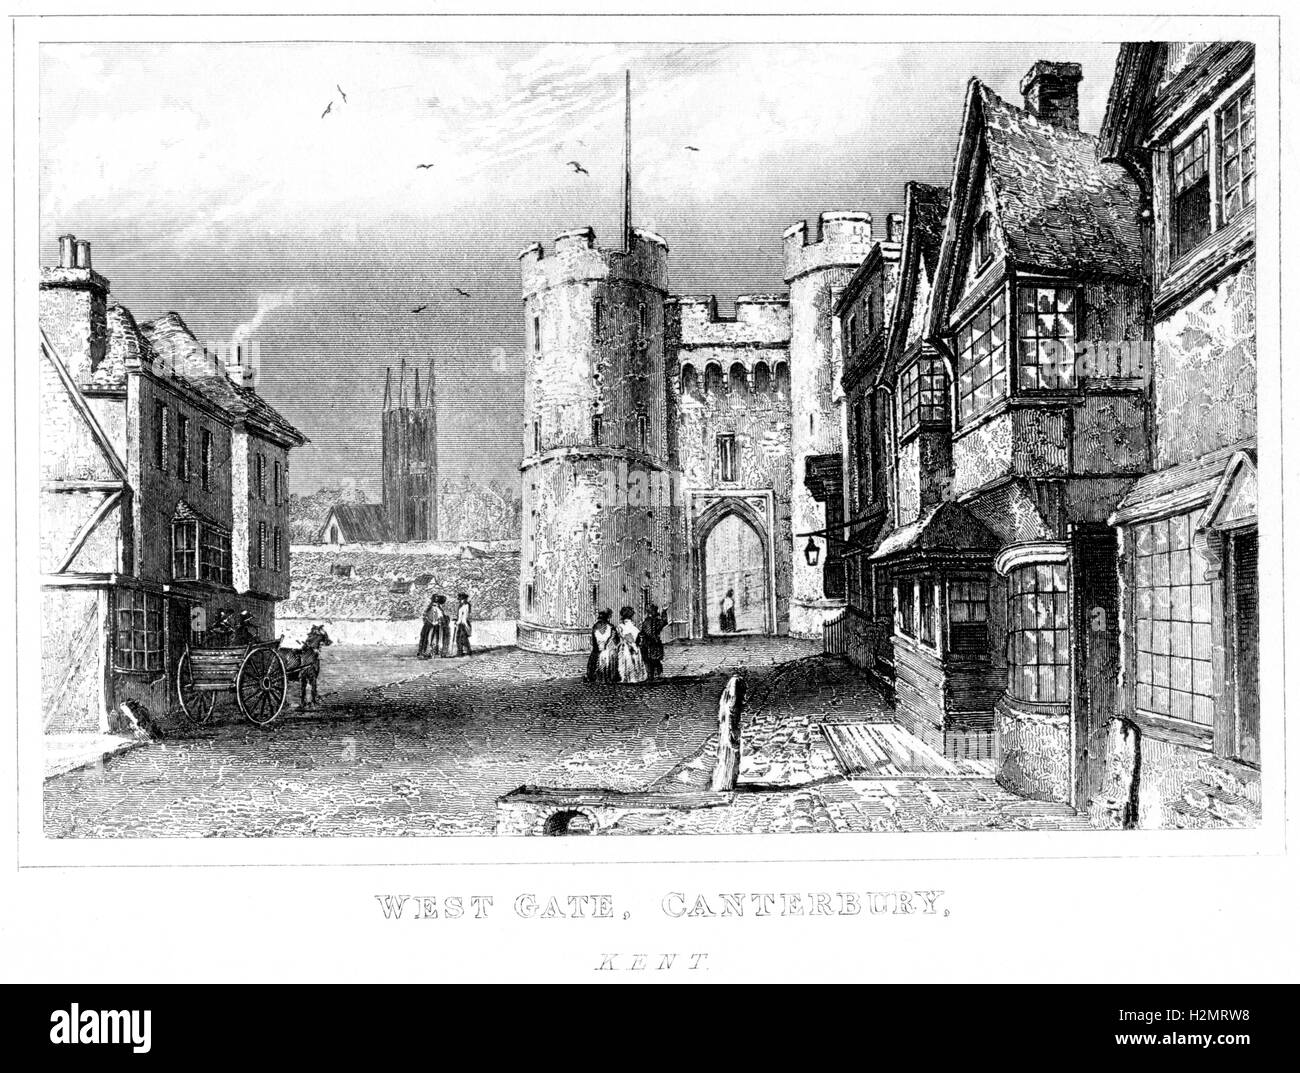 Ein Stich des West Gate, Canterbury, Kent, gescannt in hoher Auflösung aus einem Buch, das 1846 gedruckt wurde. Für urheberrechtlich frei gehalten. Stockfoto